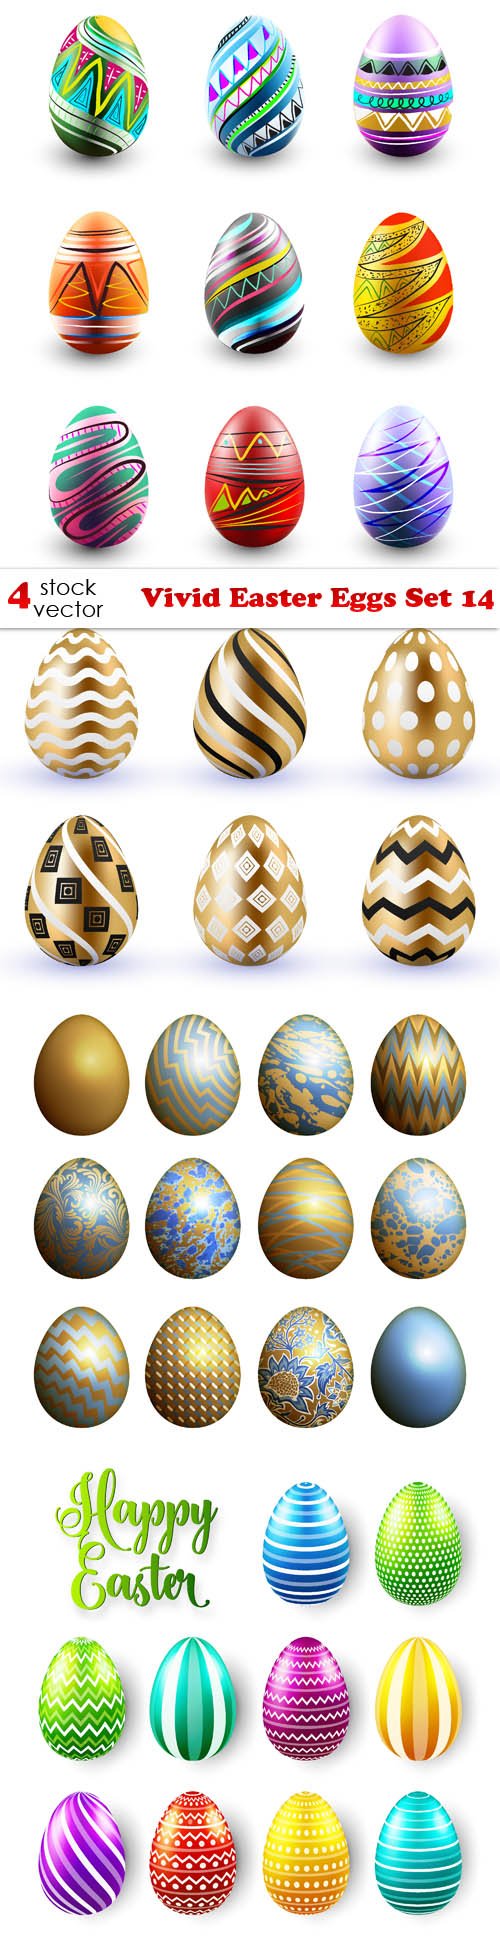 Vectors - Vivid Easter Eggs Set 14